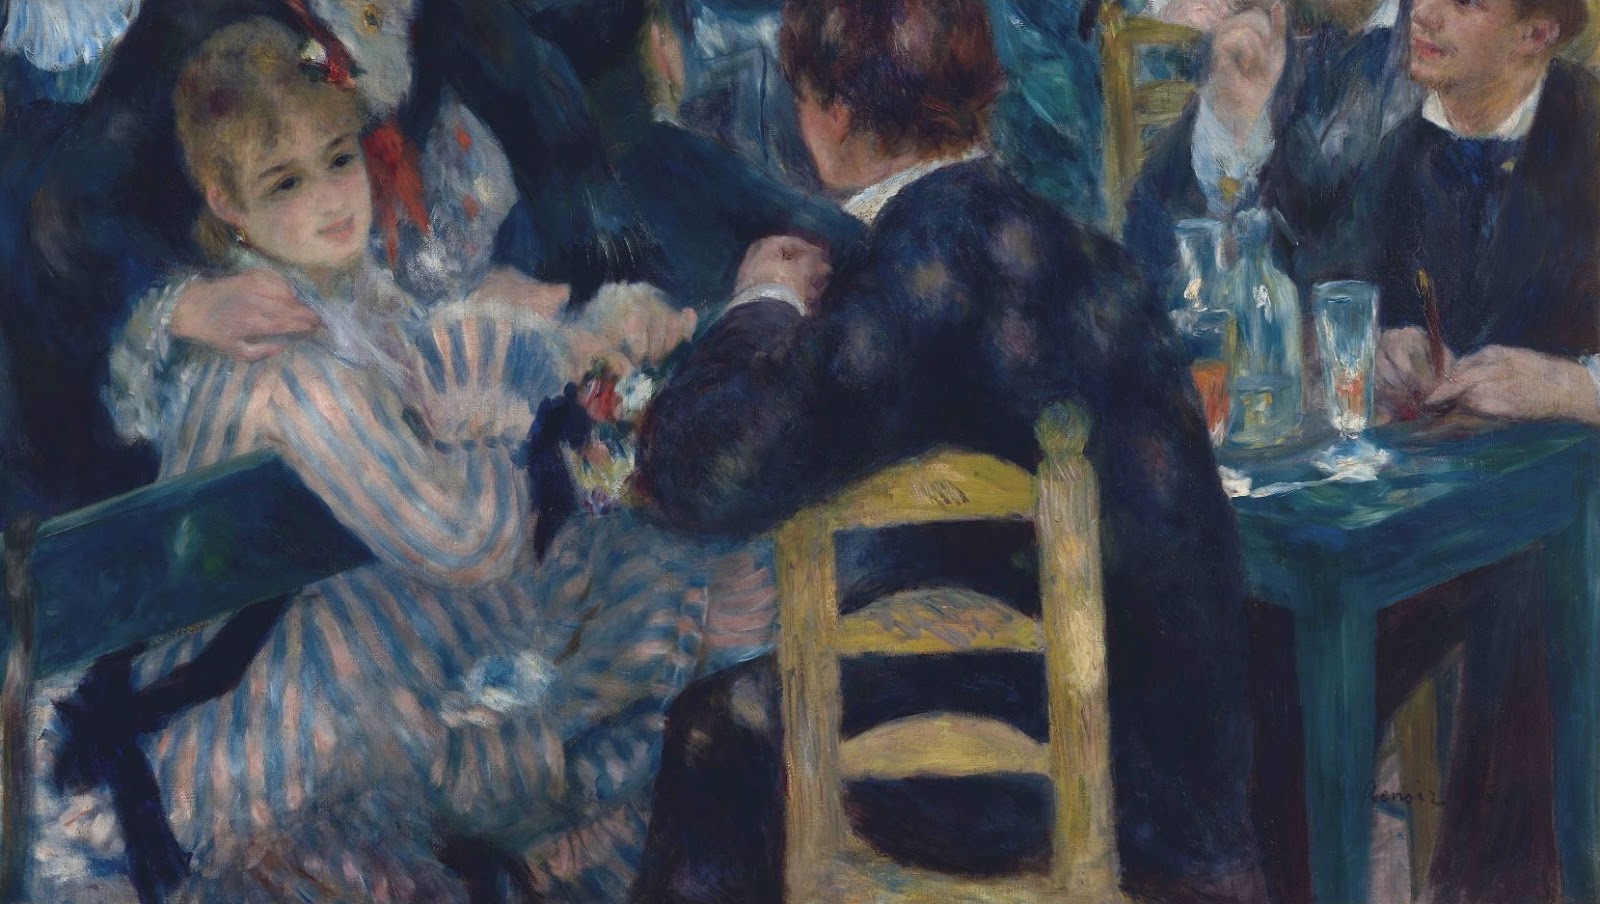 Pierre+Auguste+Renoir-1841-1-19 (424).JPG